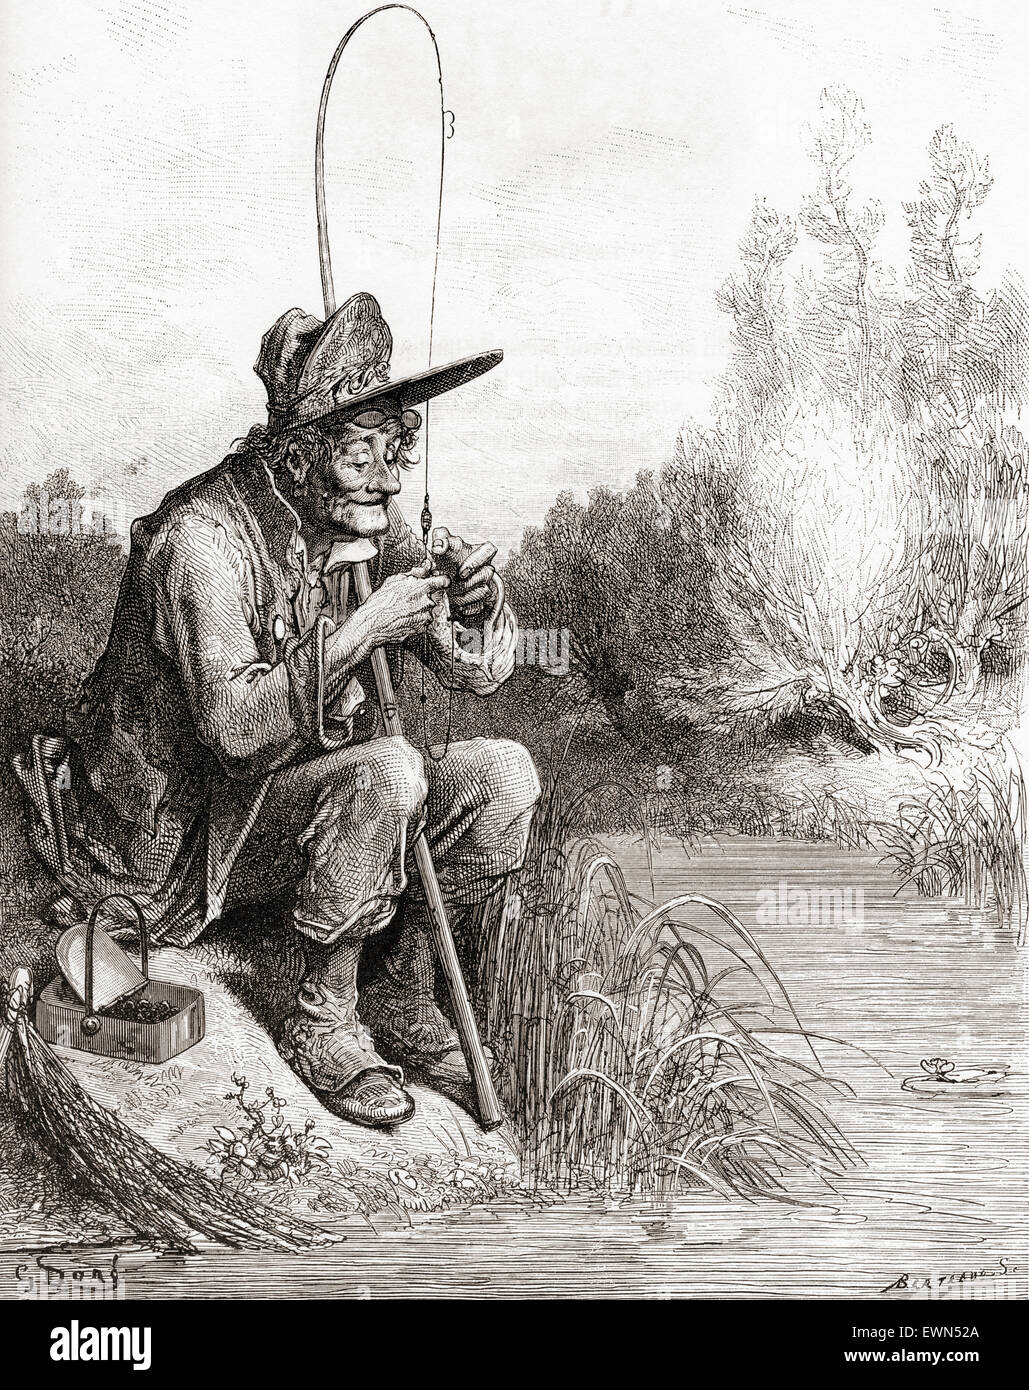 The Fisherman and the Little Fish (Le petit poisson et le pêcheur).  Gustave Doré's illustration of La Fontaine's fable. Stock Photo